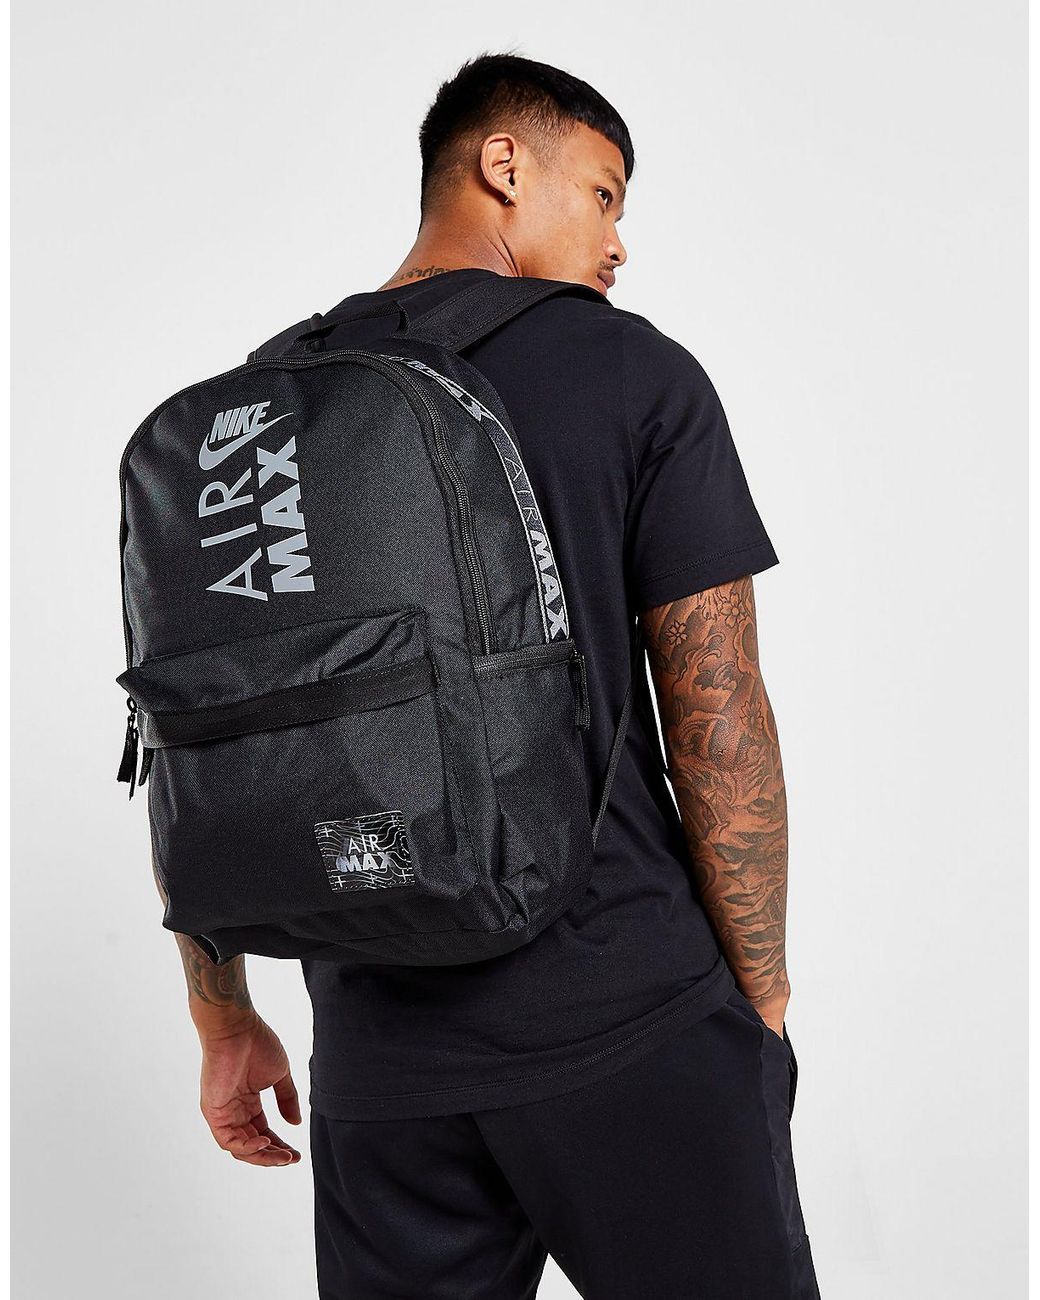 Nike Air Max Heritage Backpack in Black | Lyst UK